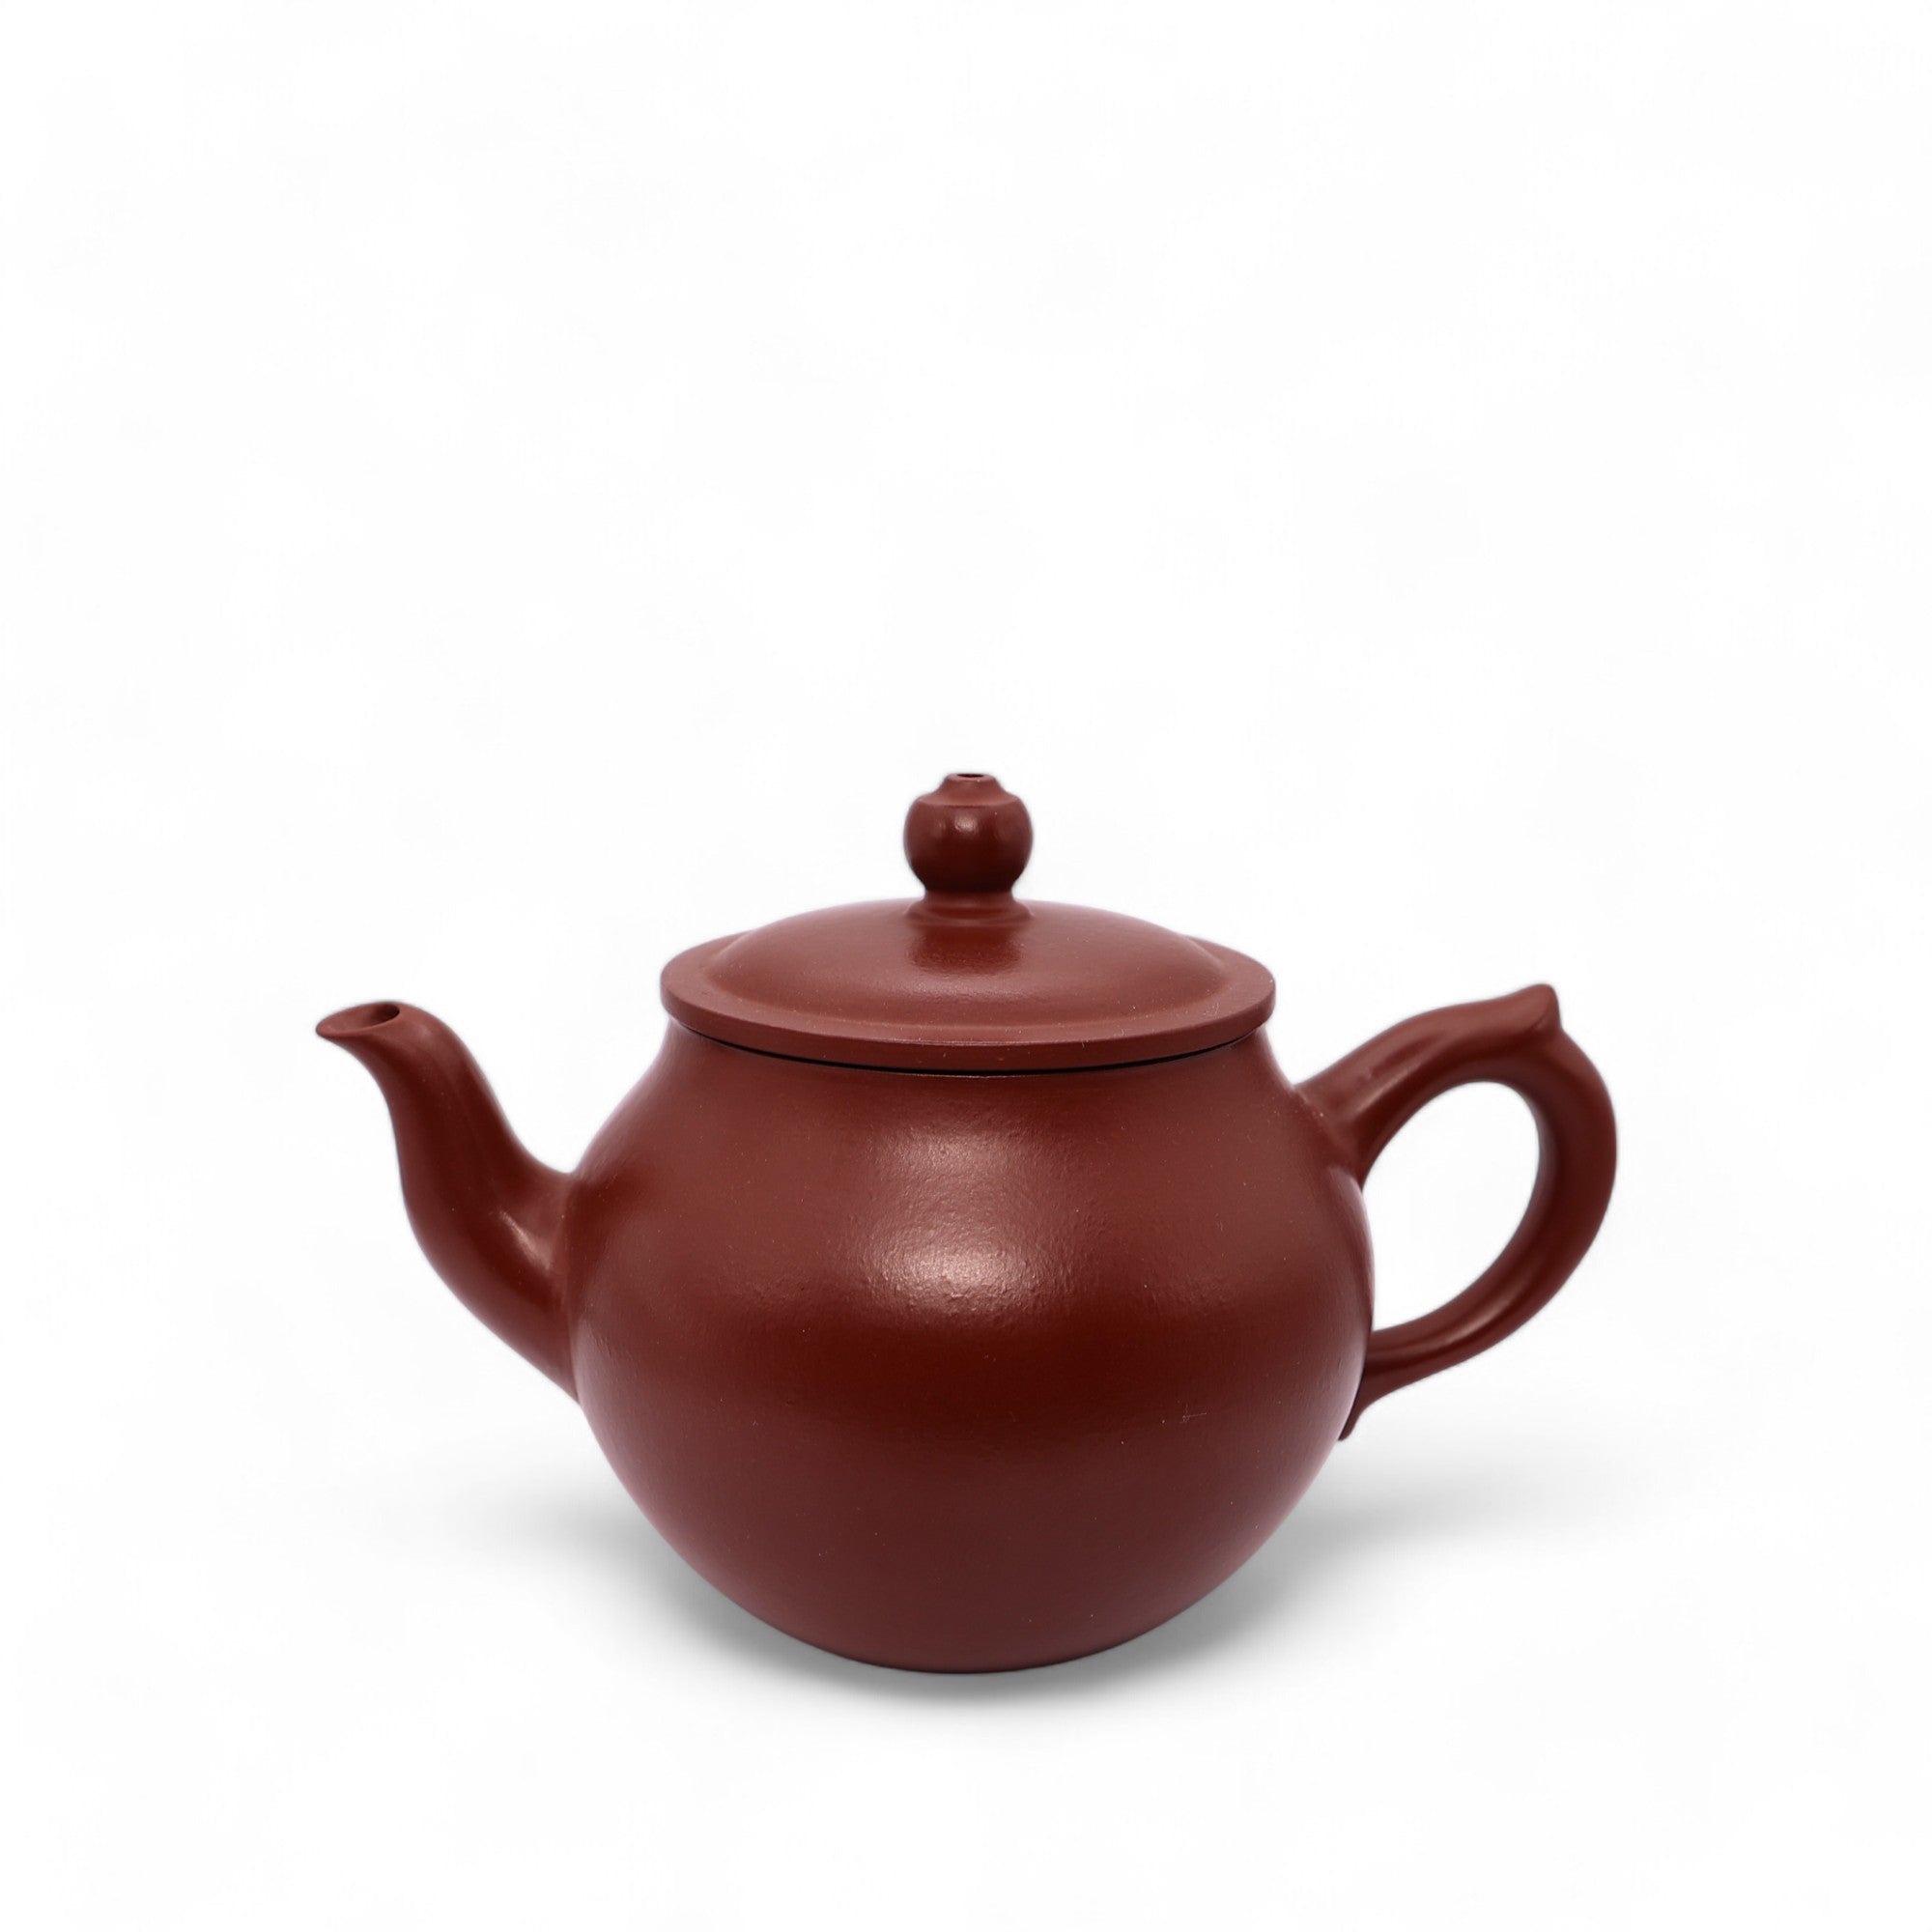 Handmade Premium Yixing Clay Teapot - Serenity